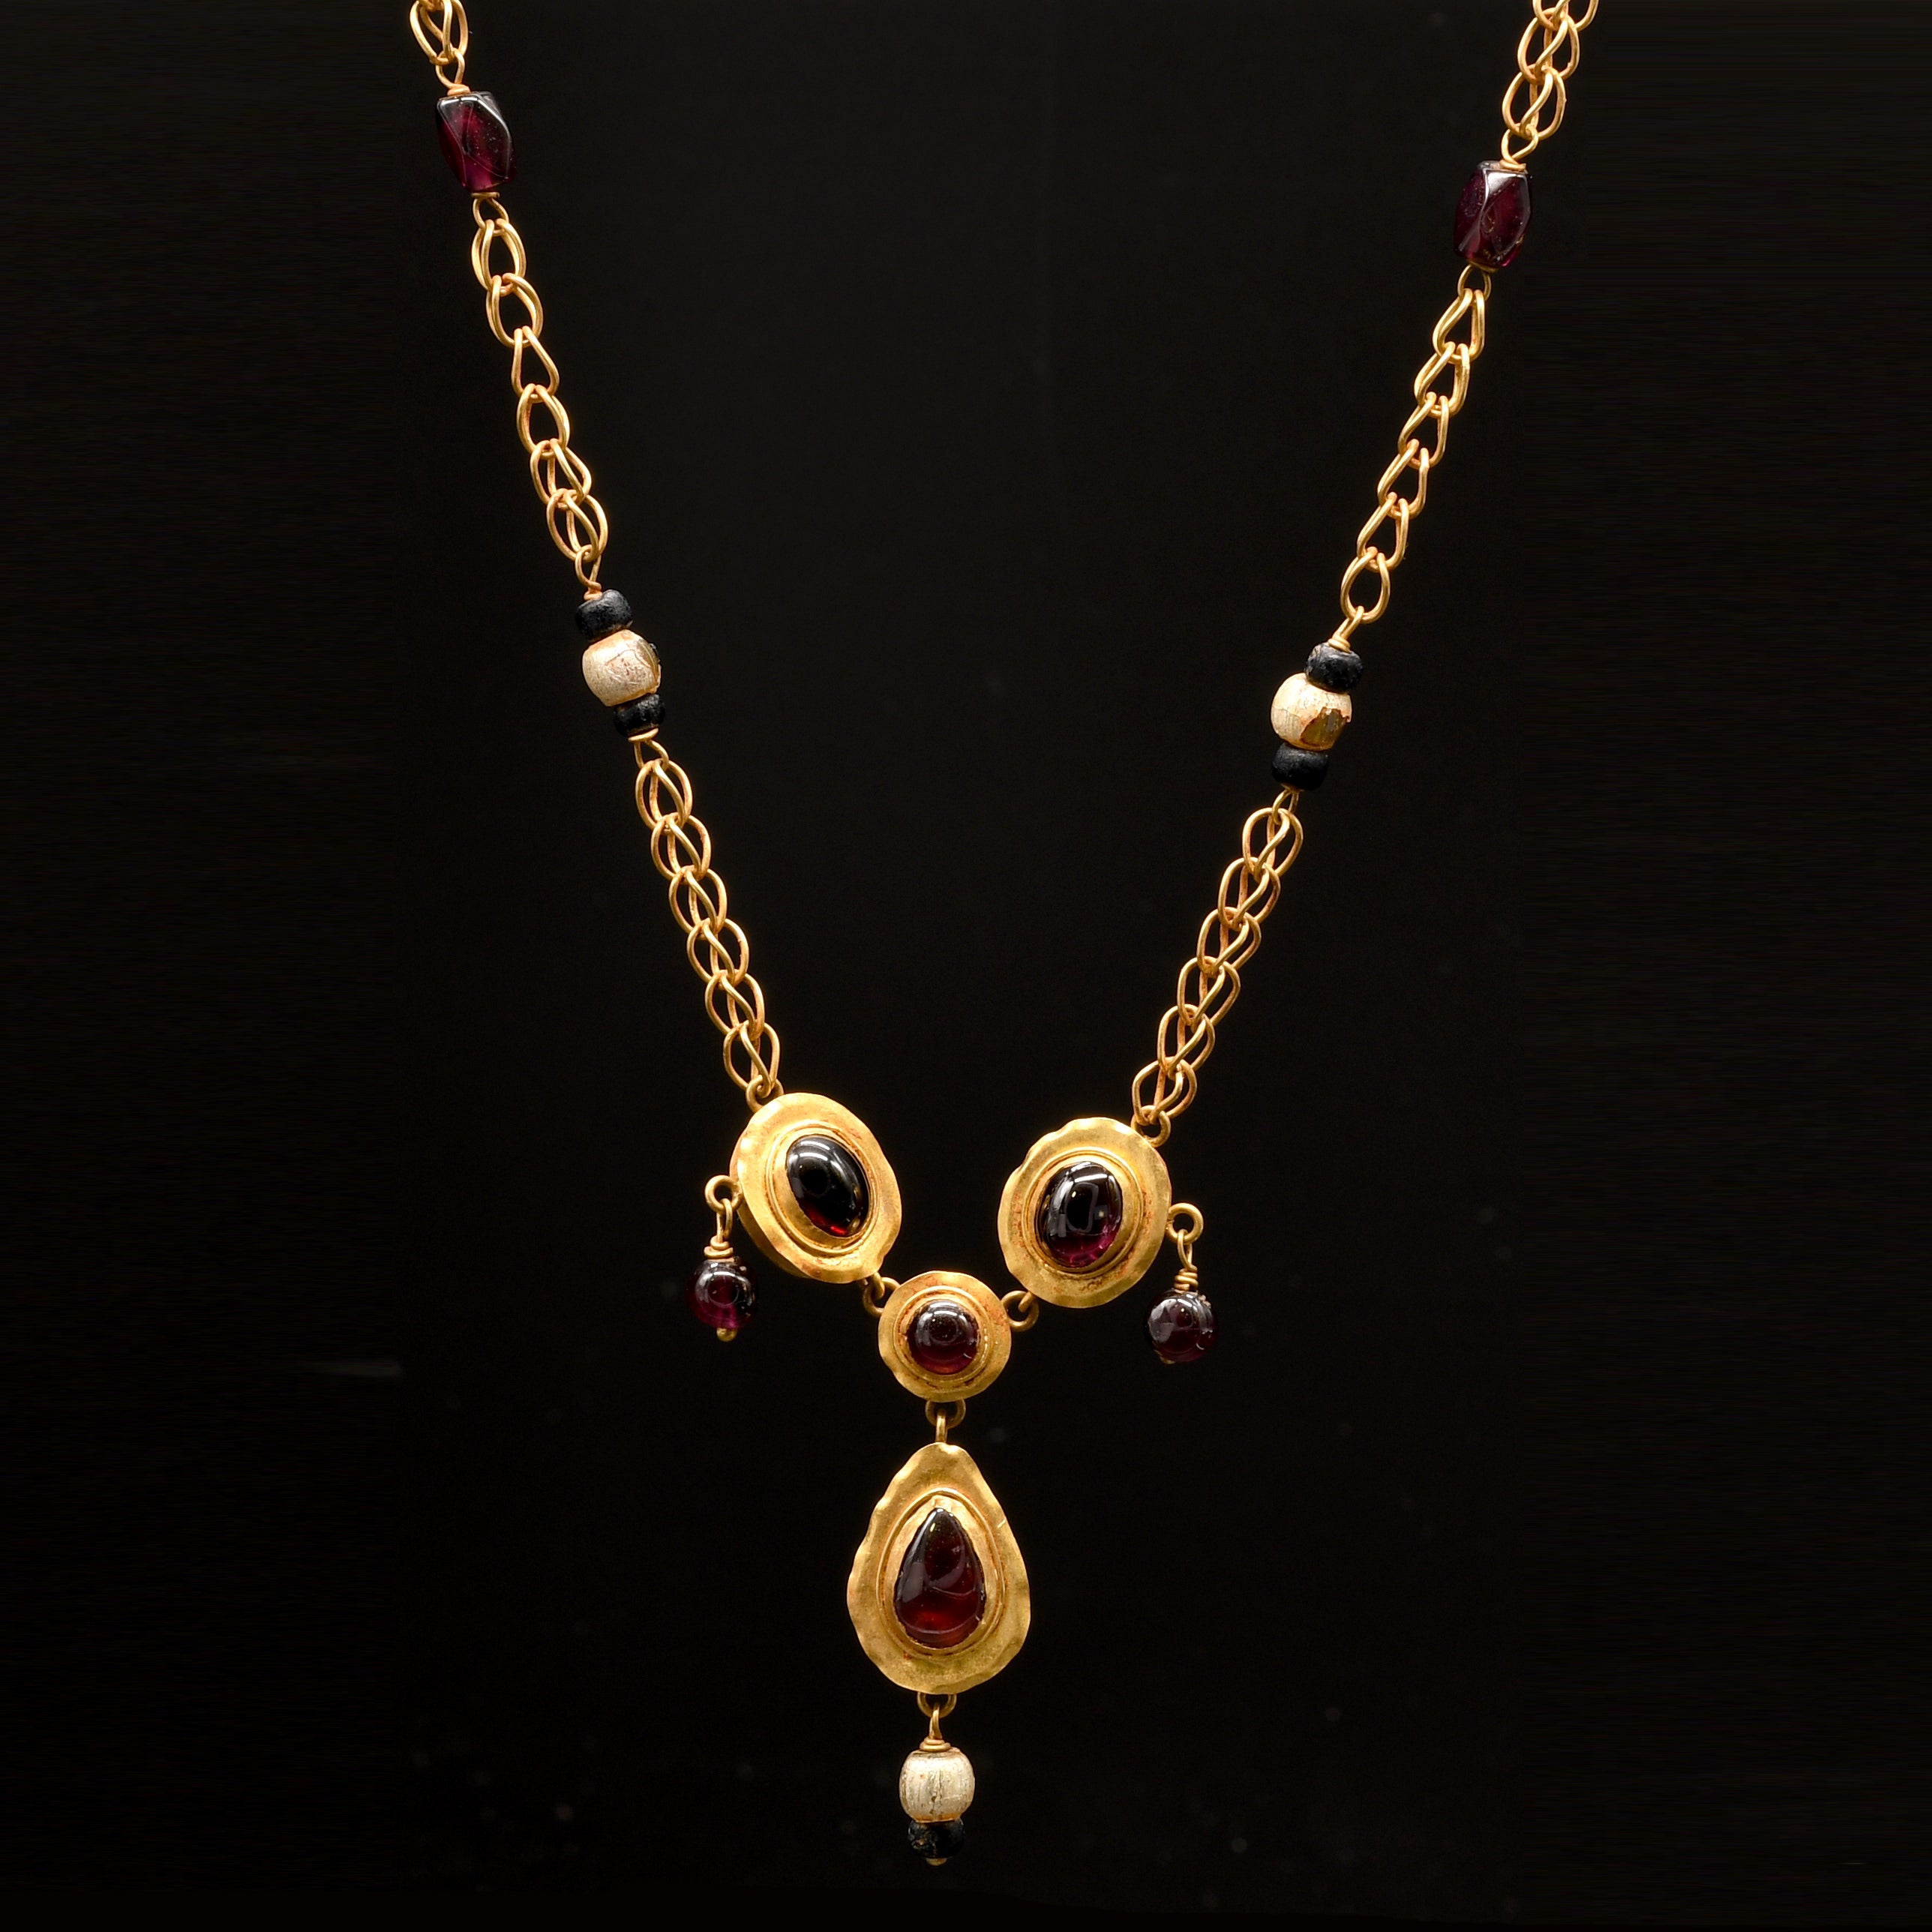 Eine hellenistische Halskette aus Gold, Granat und Perlen, ca. 1. Jahrhundert v. Chr